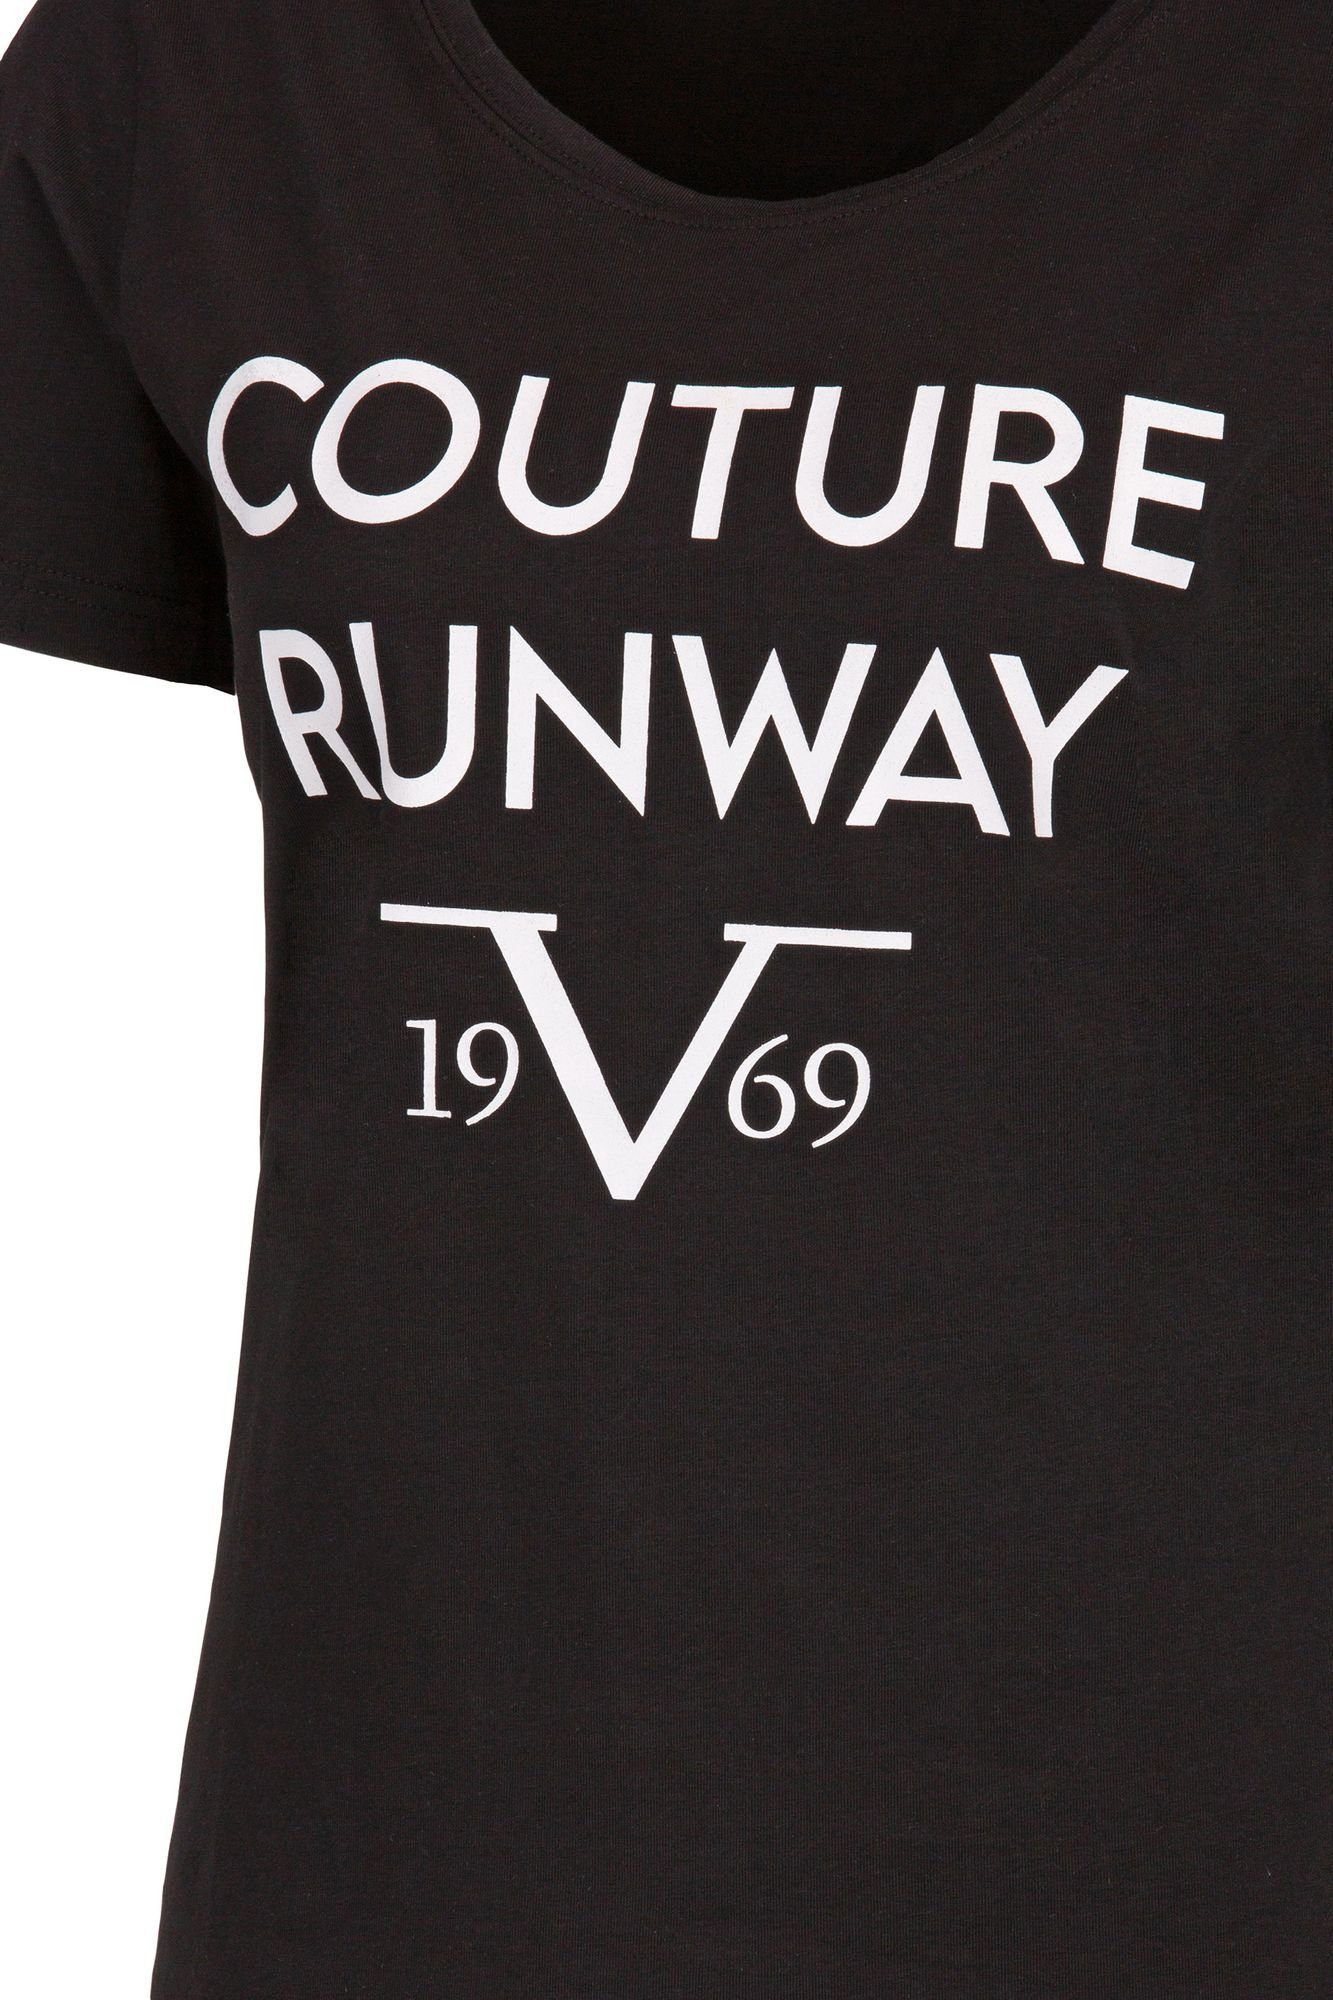 Italia 19V69 T-Shirt Helena Versace by